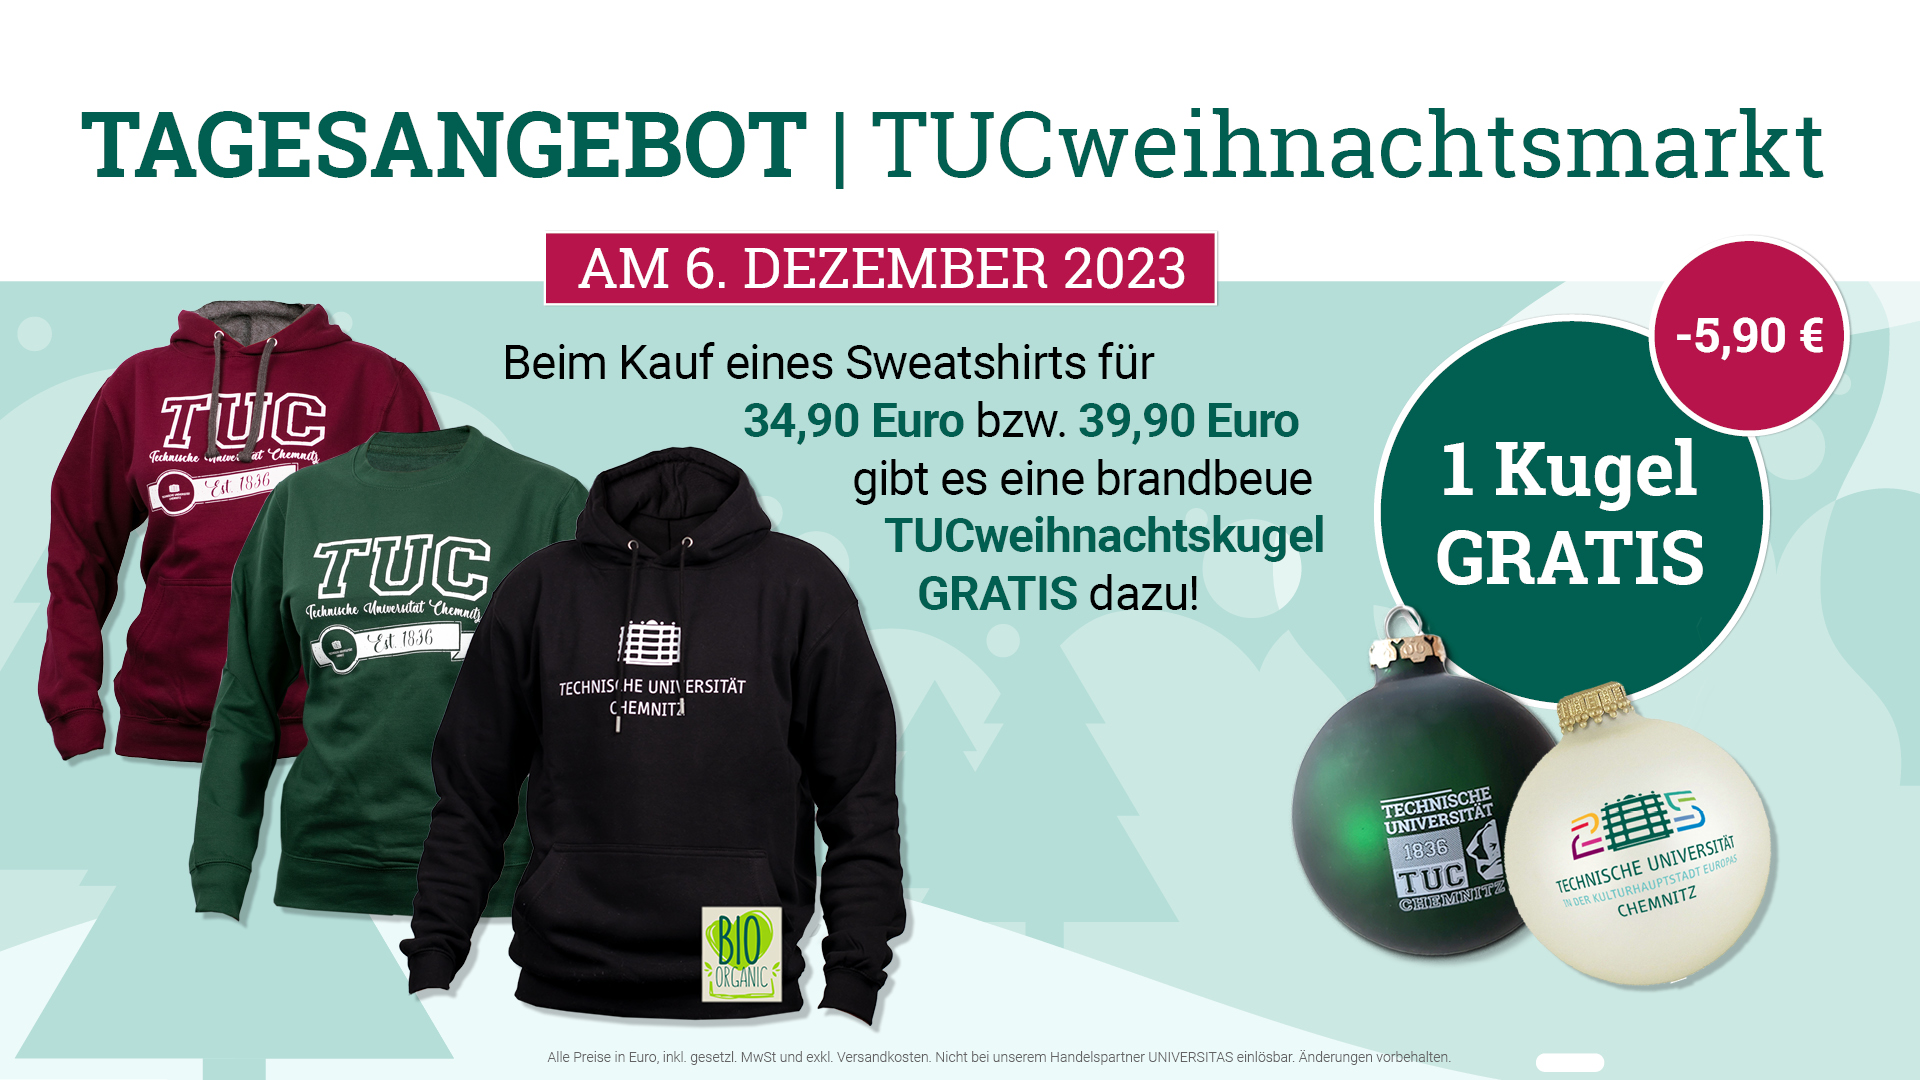 Tagesangebot Weihnachtsmarkt - Beim Kauf eines Sweatshirts für 34,90 Euro bzw. 39,90 Euro gibt es eine brandbeue TUCweihnachtskugel gratis dazu!